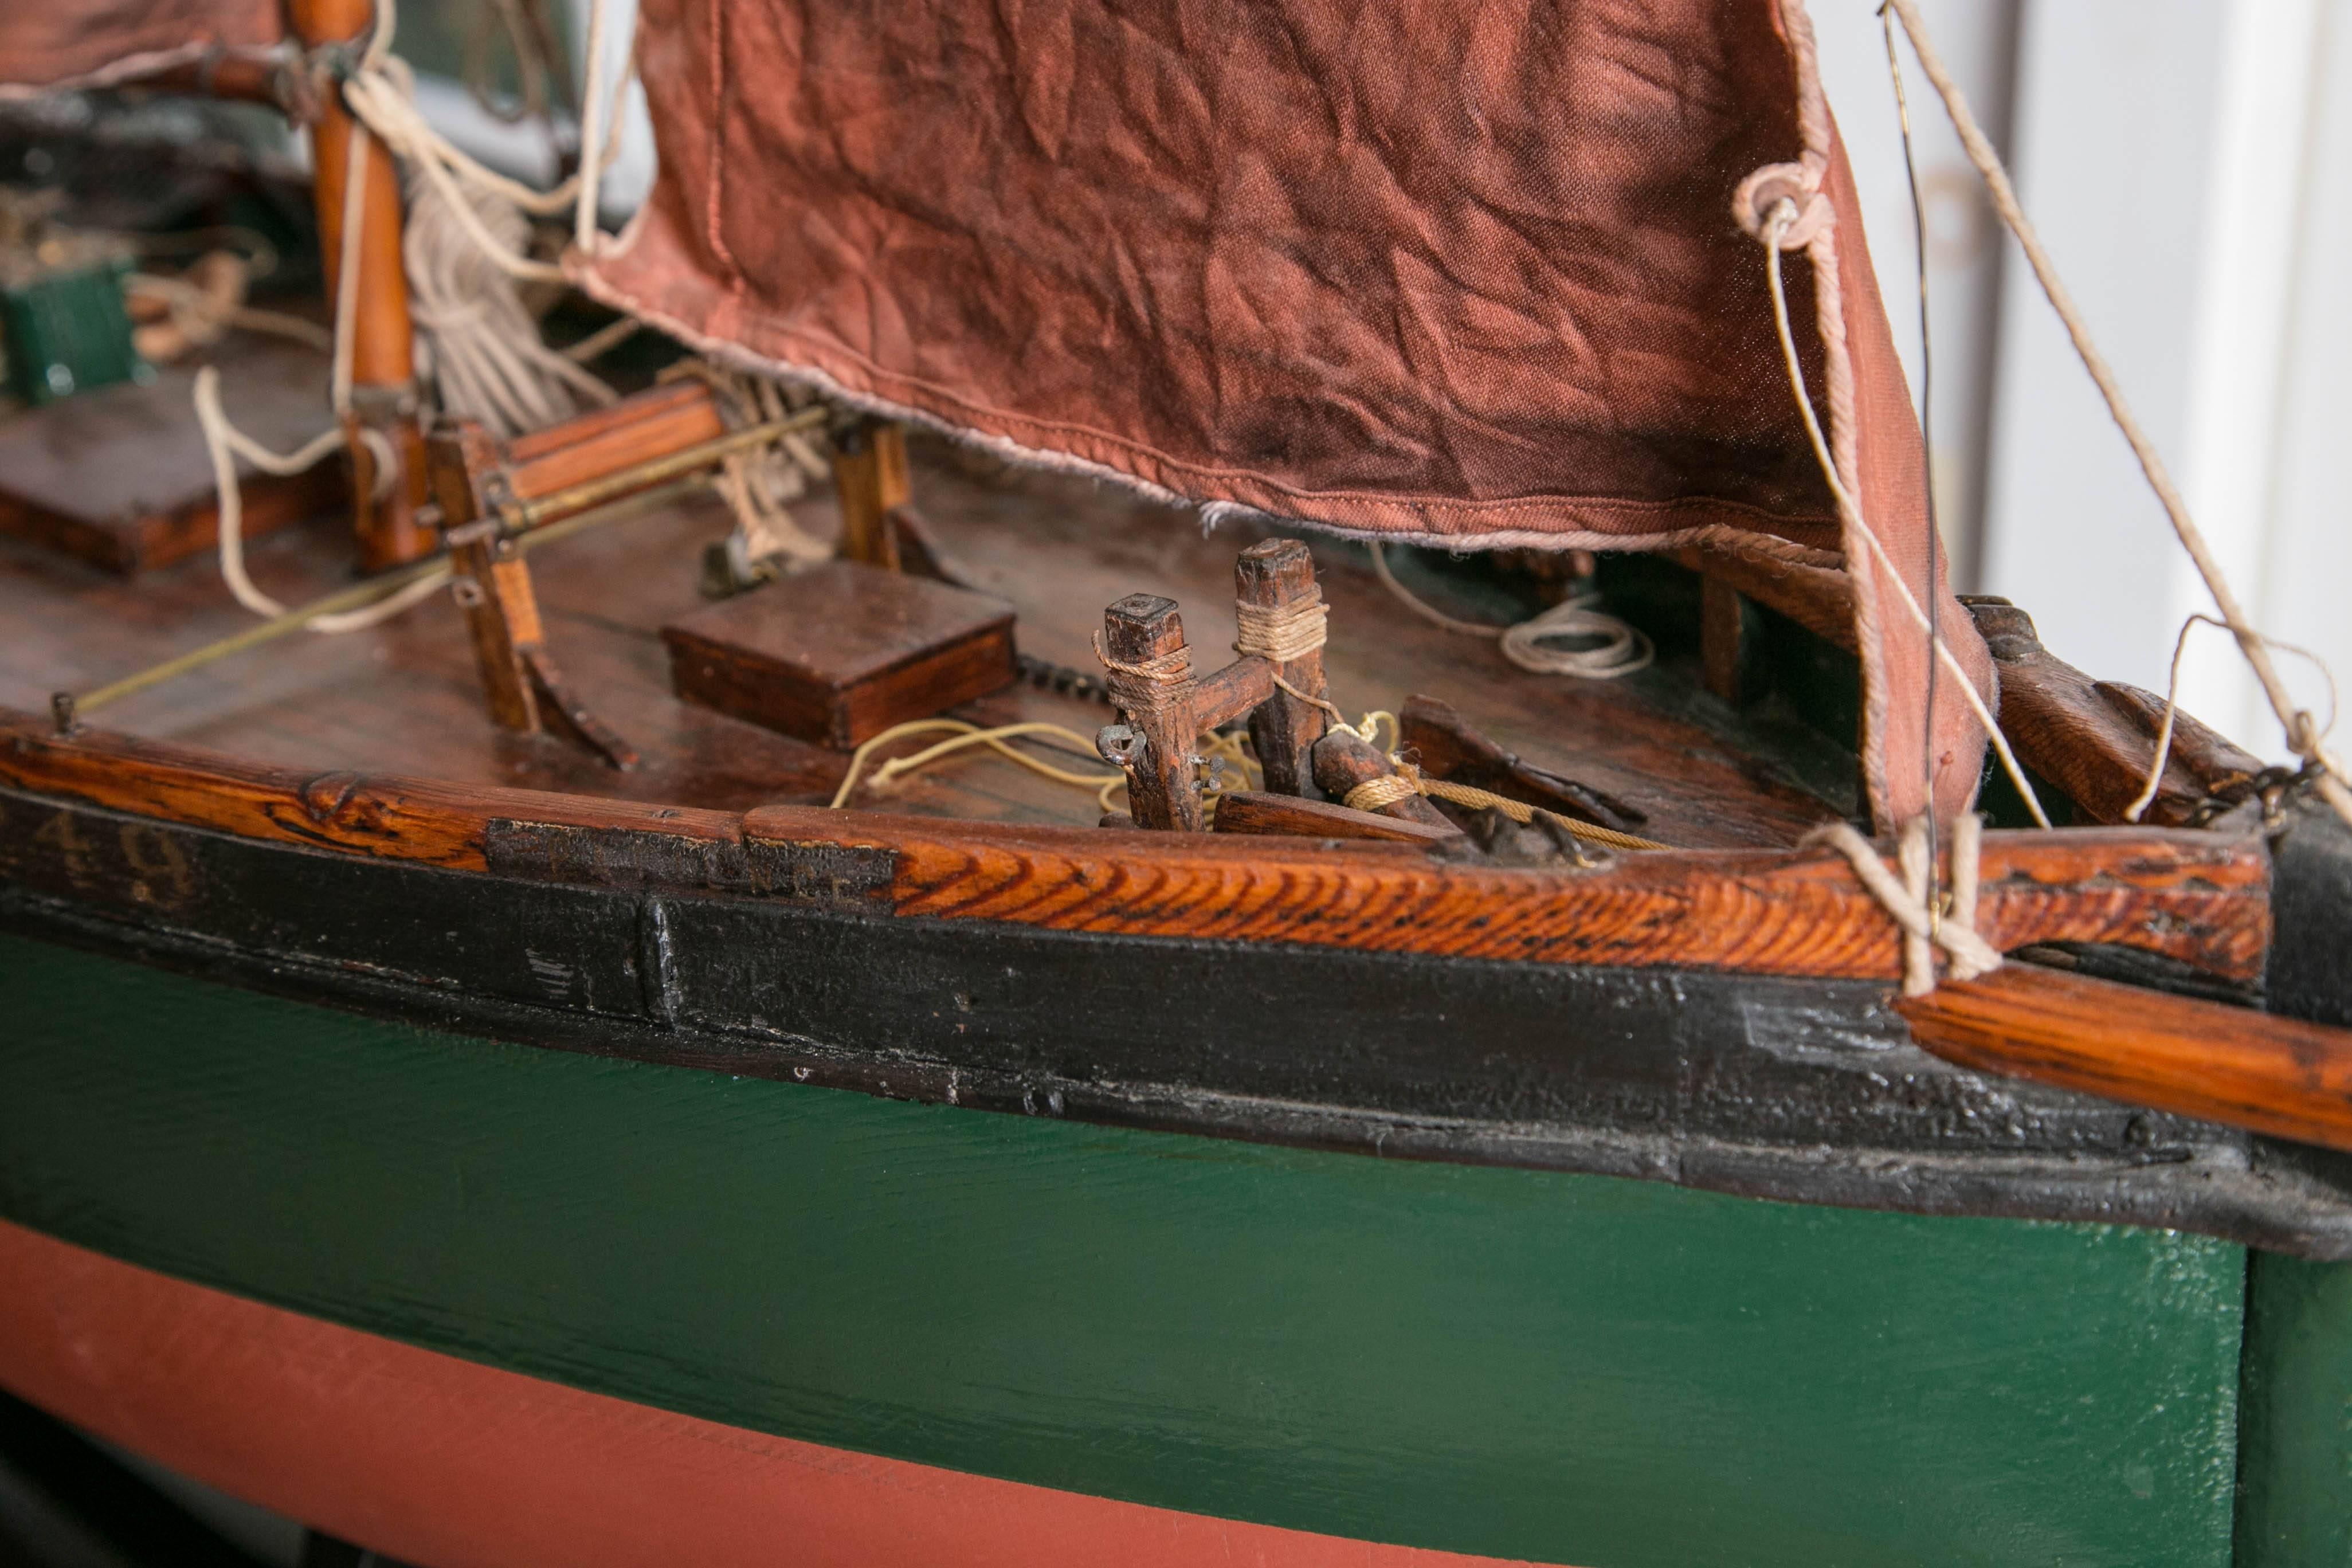 Ausgestattet mit richtigen Segeln (in der Farbe, die sie nach dem ersten Anstrich gehabt hätten), Ketten und Anker, zeigt es stolz seine handwerklichen Wurzeln. Diese Boote wurden während eines Großteils des 19. Jahrhunderts an den Küsten eingesetzt